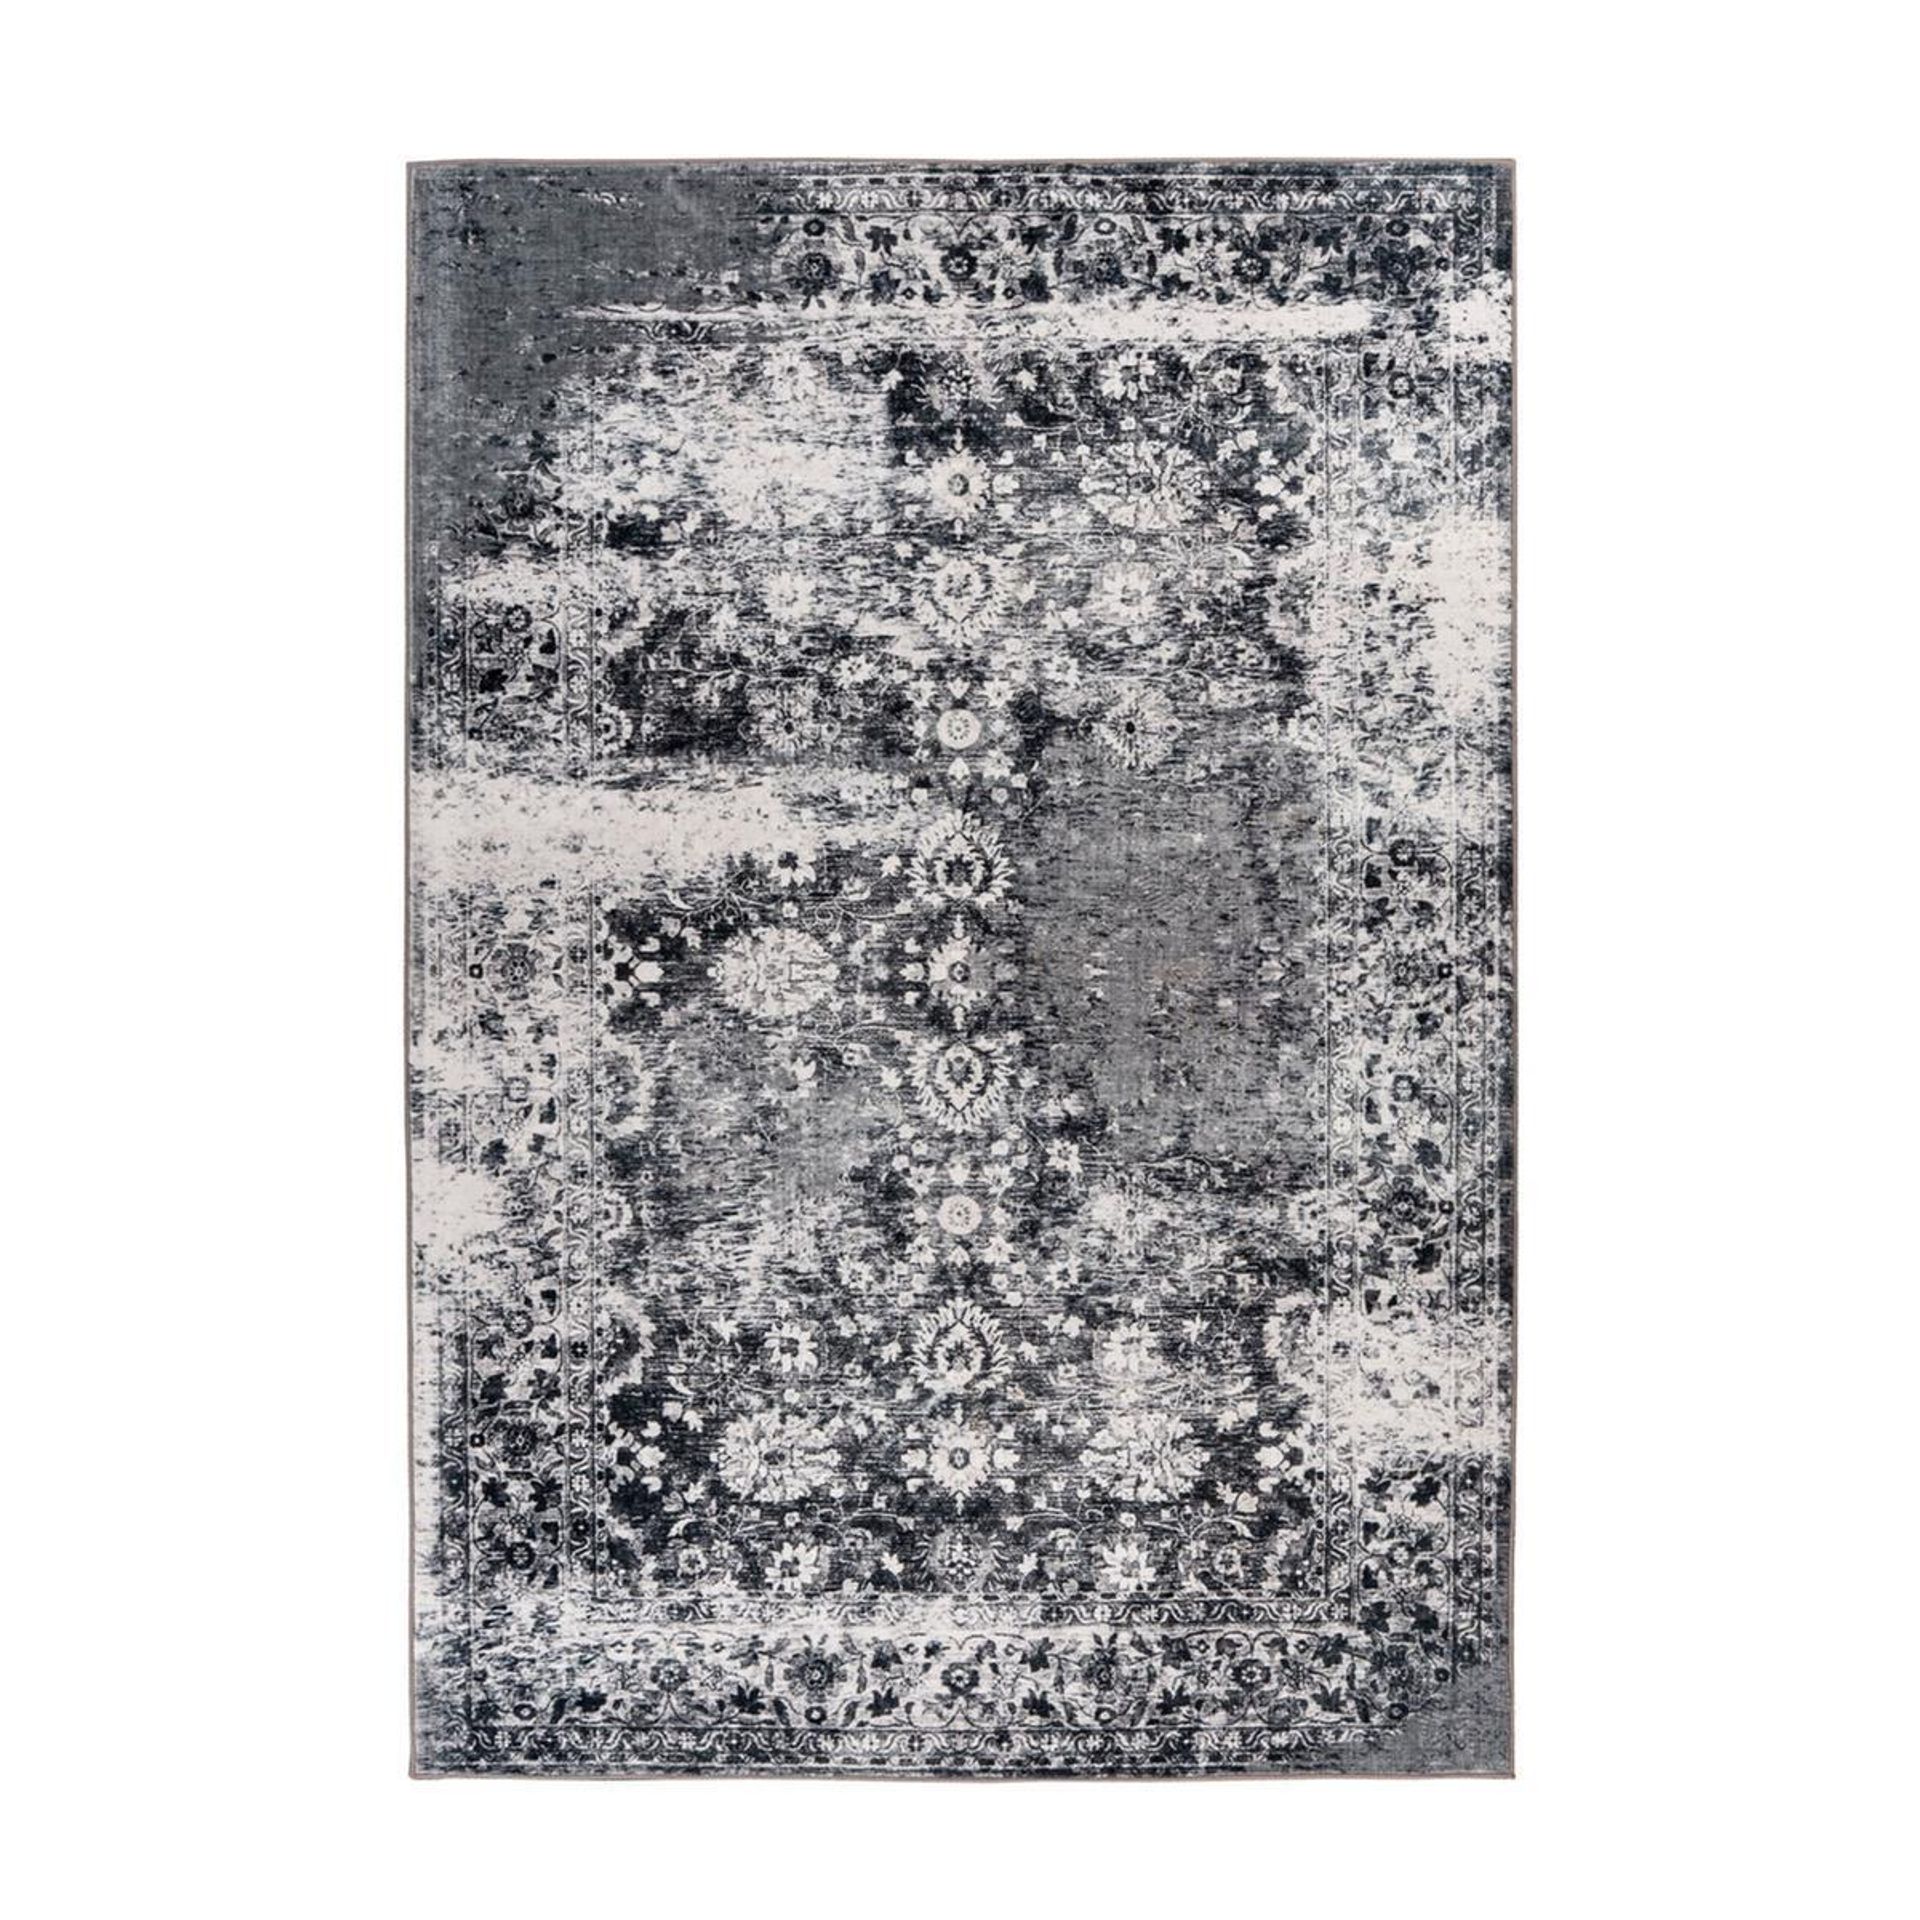 Teppich Saphira 400 Grau 160 cm x 230 cm